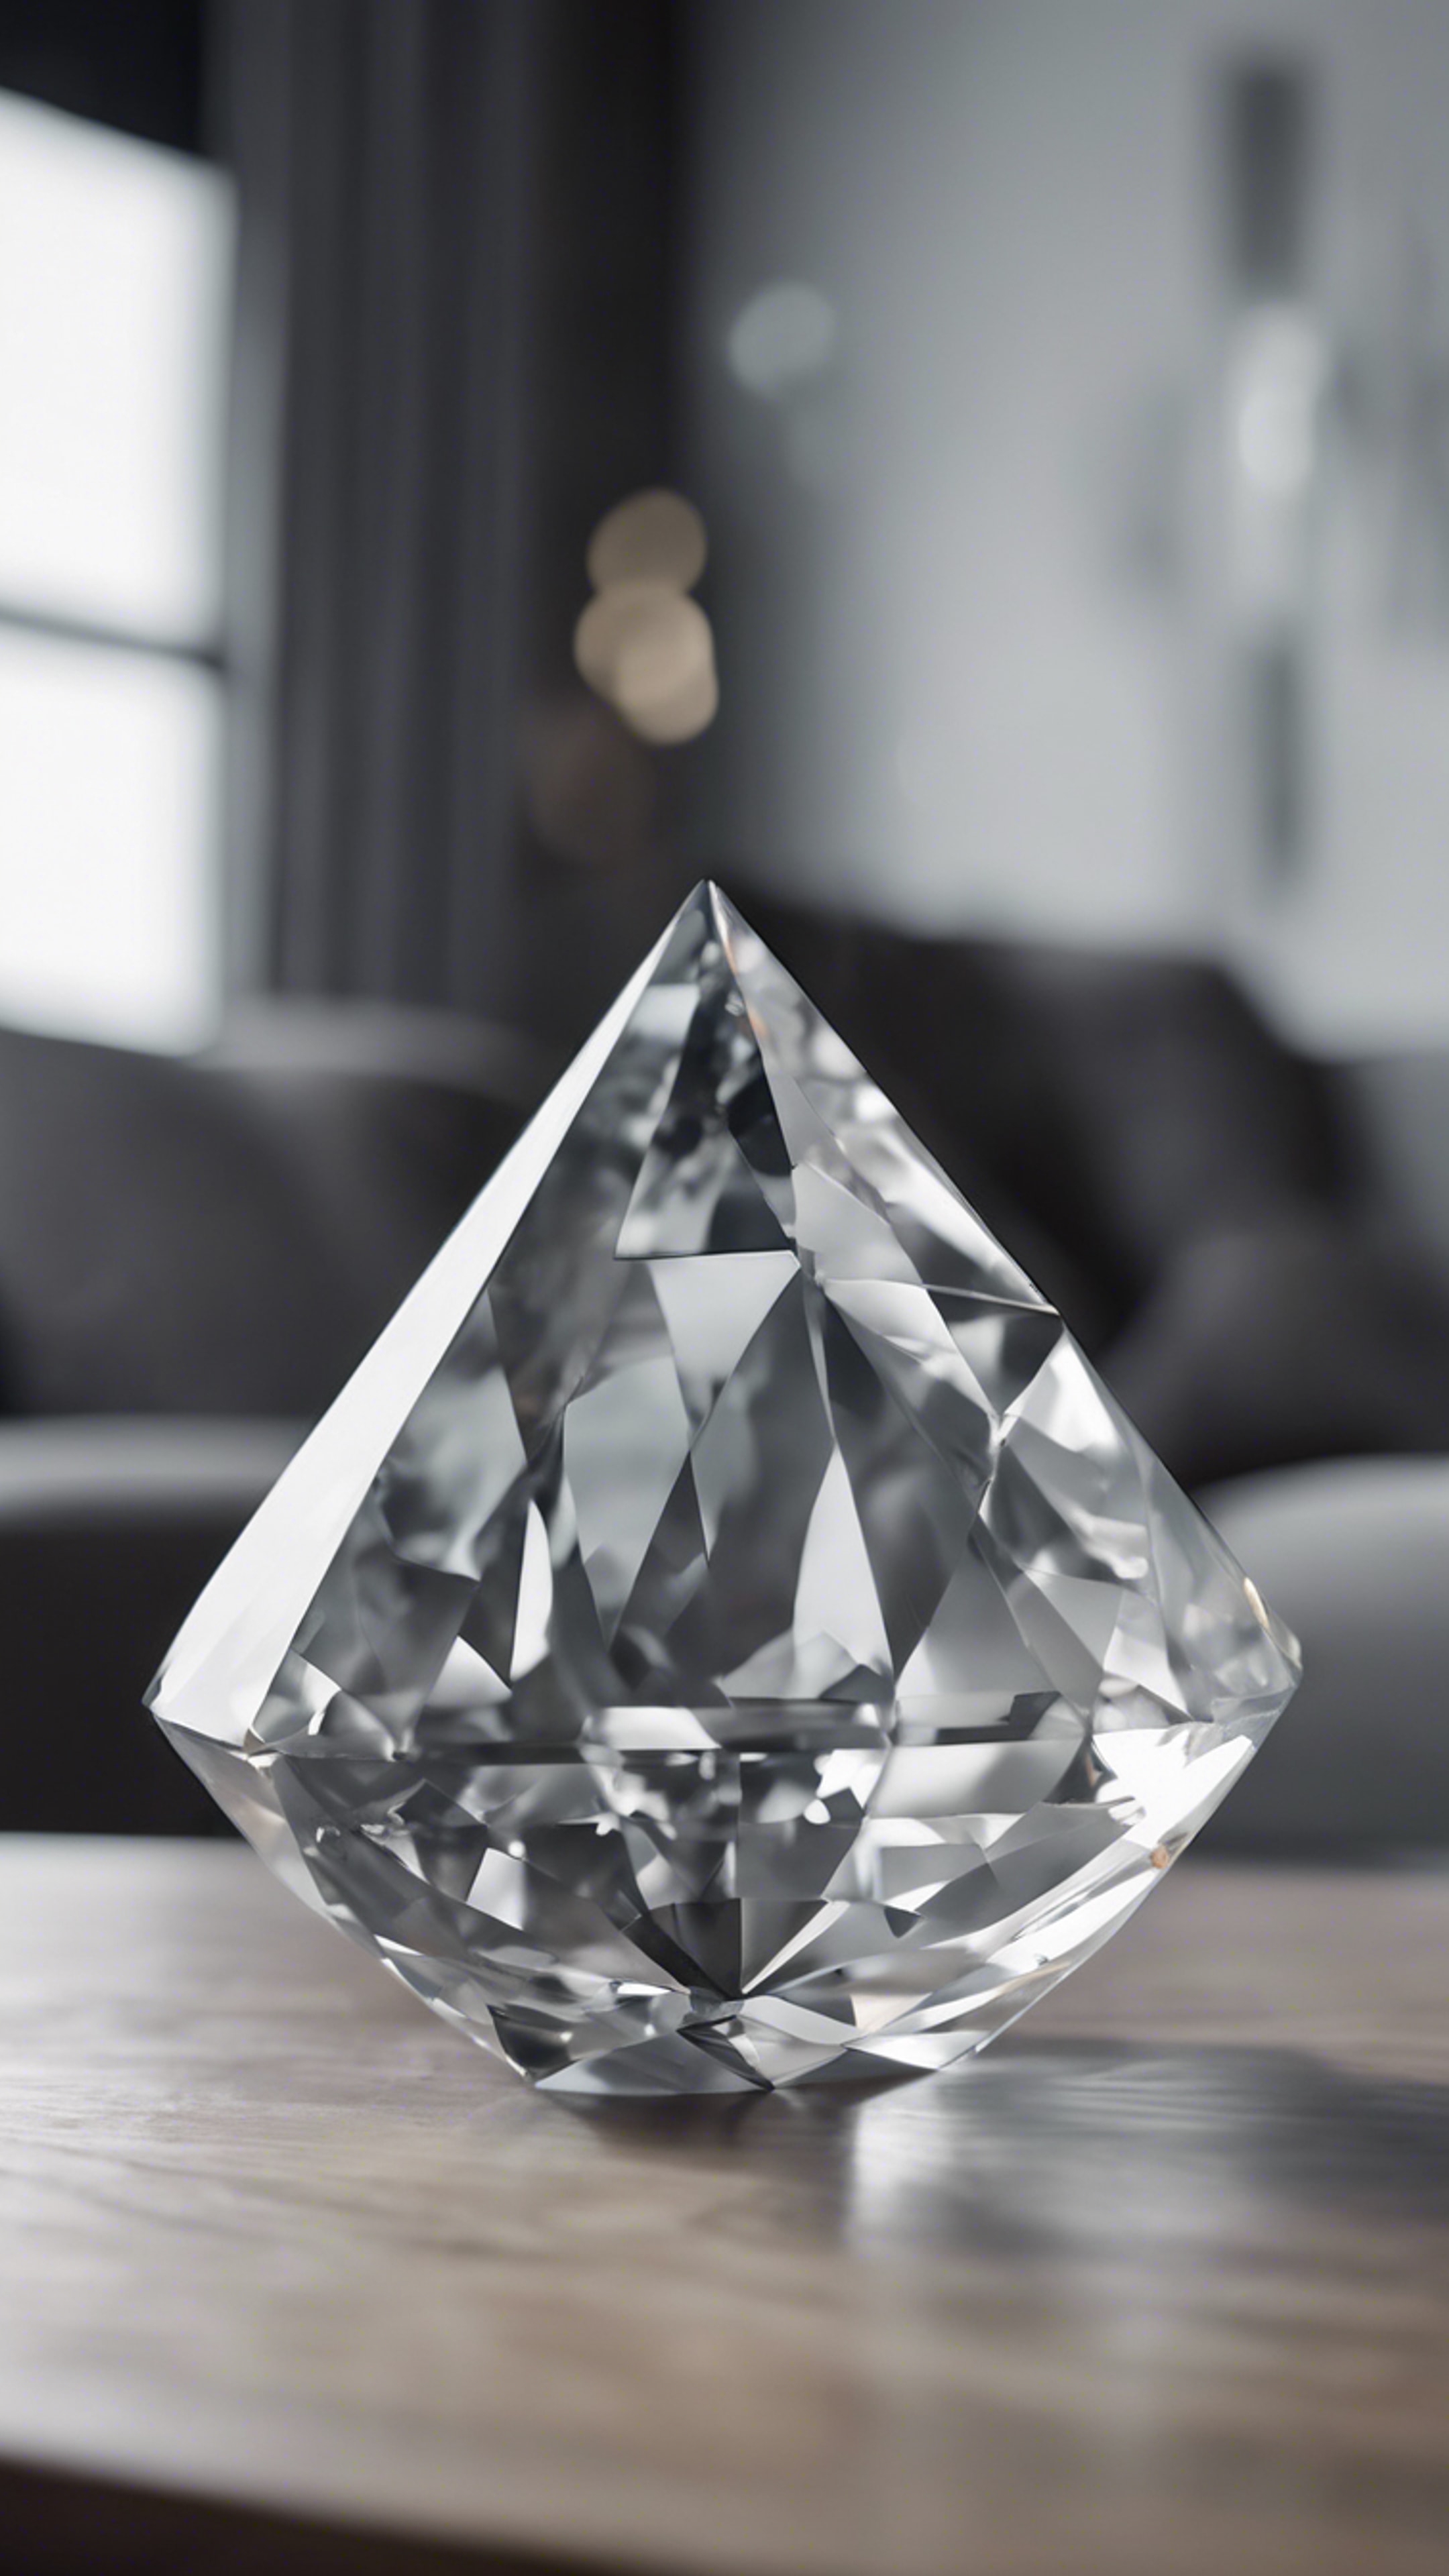 A minimalist gray diamond centerpiece adorning a modern loft-space living room. Wallpaper[b9afc59a64a443e4b5a1]